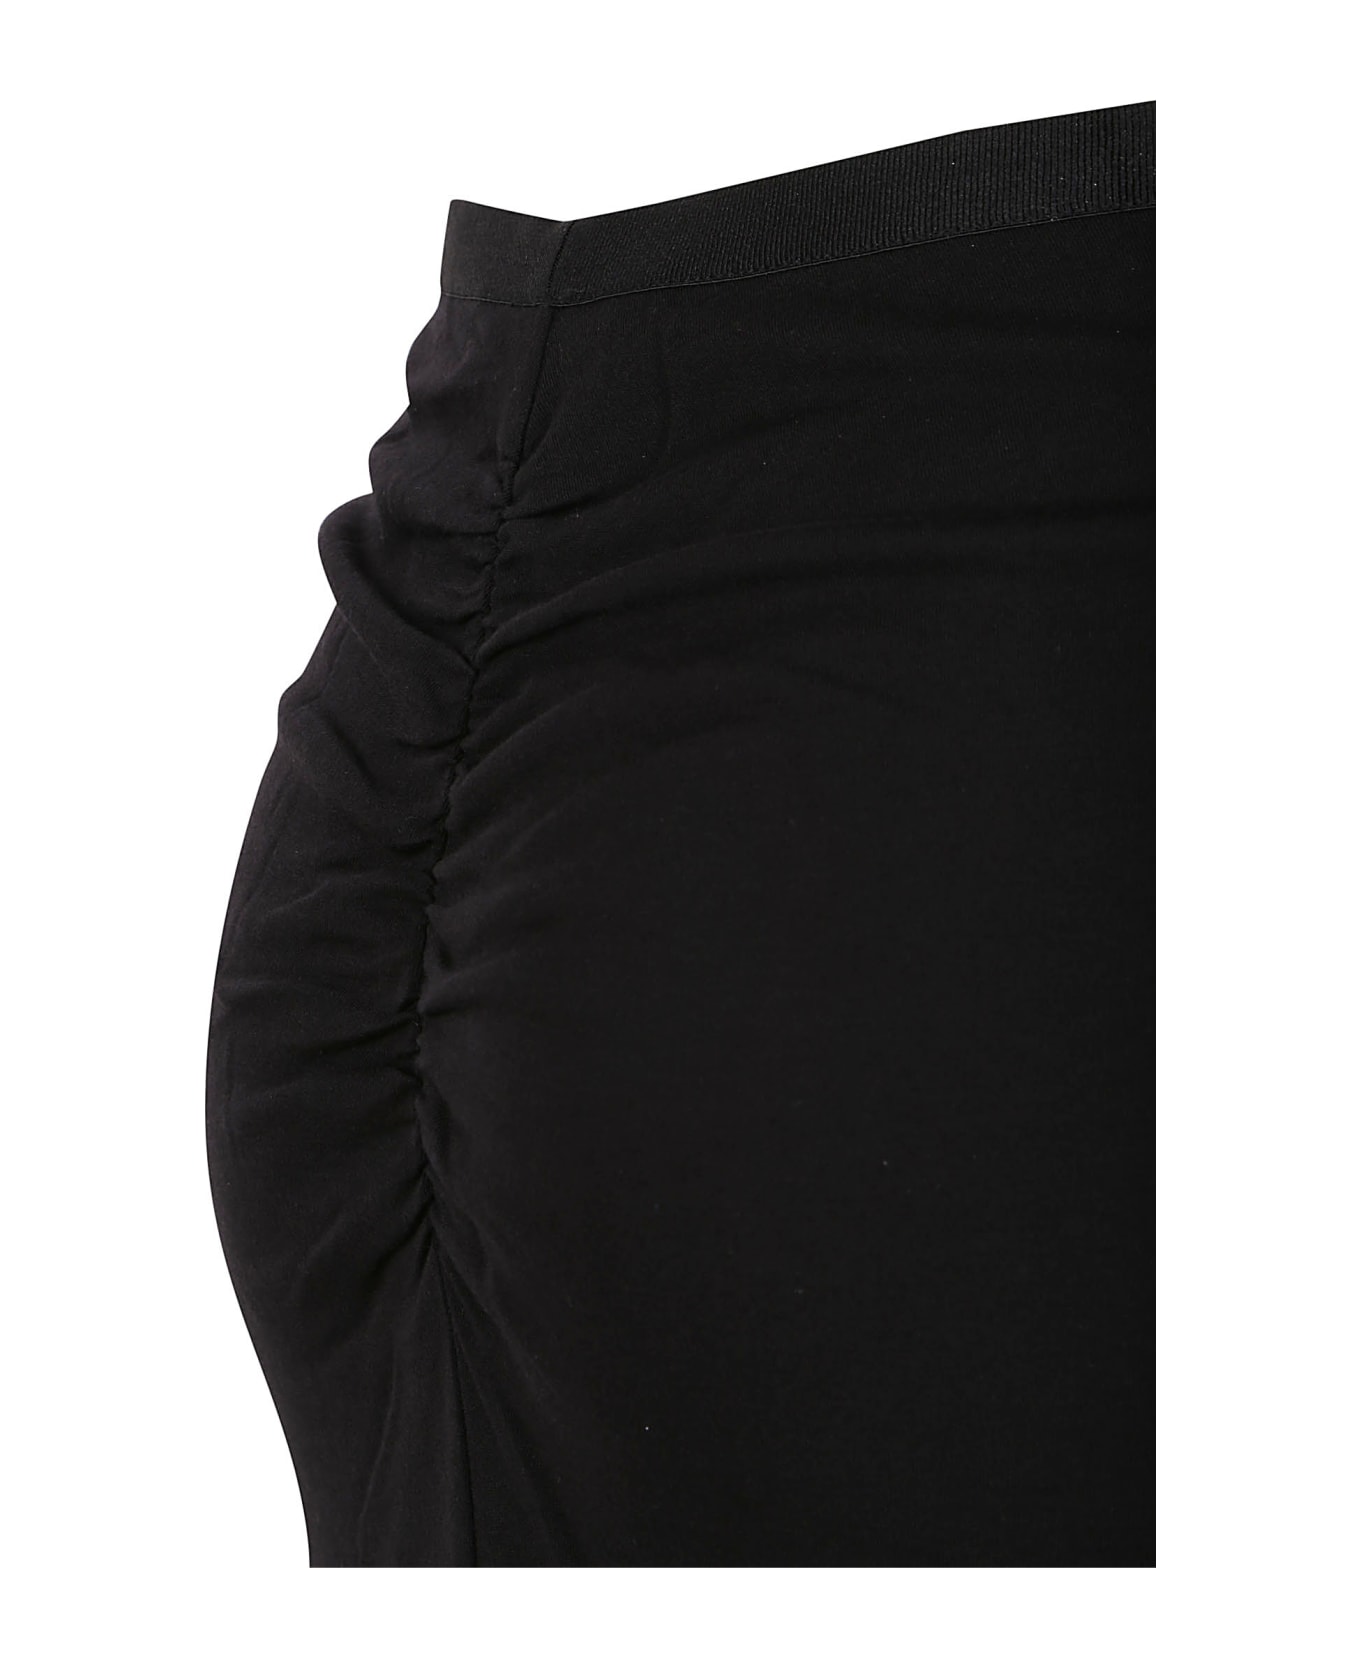 Diane Von Furstenberg Skirts Black - Black